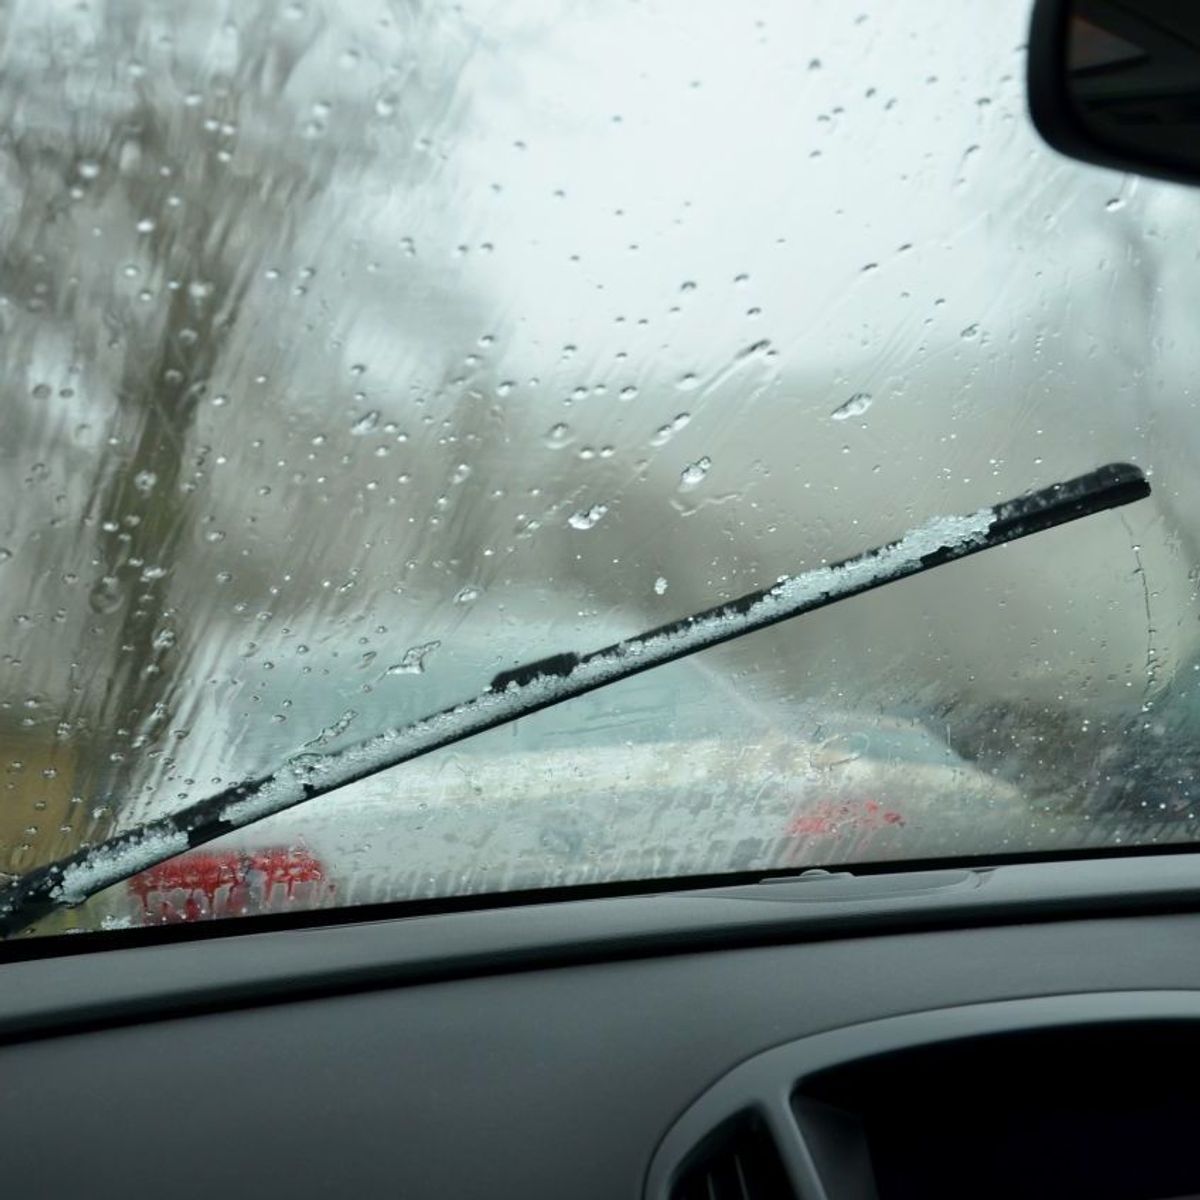 Beschlagene Scheiben im Winter: Diese Taste im Auto nicht drücken